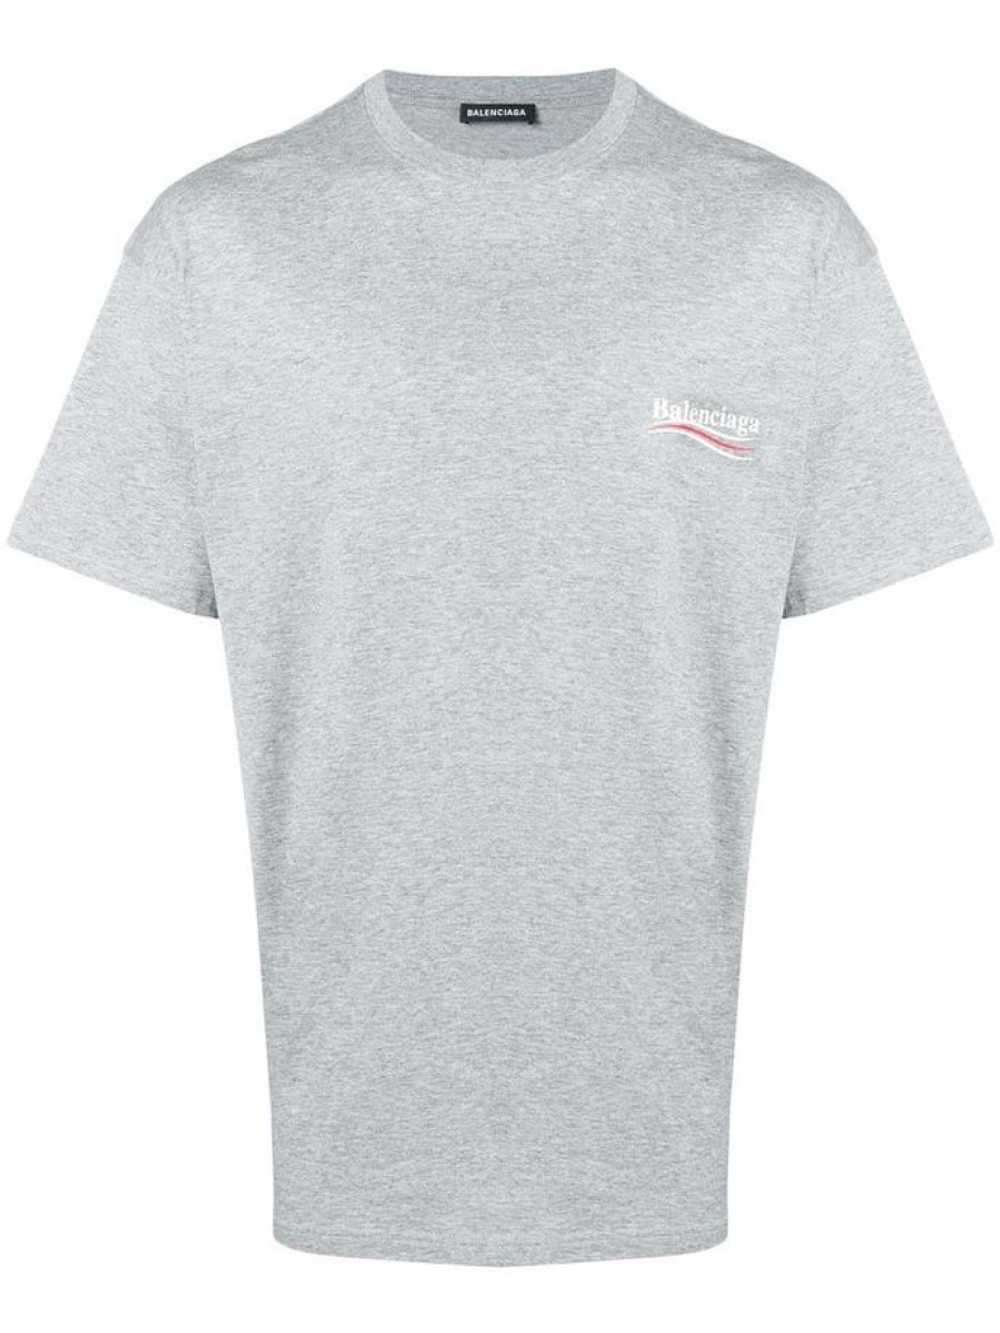 Balenciaga Grey Political Logo T-shirt - image 1